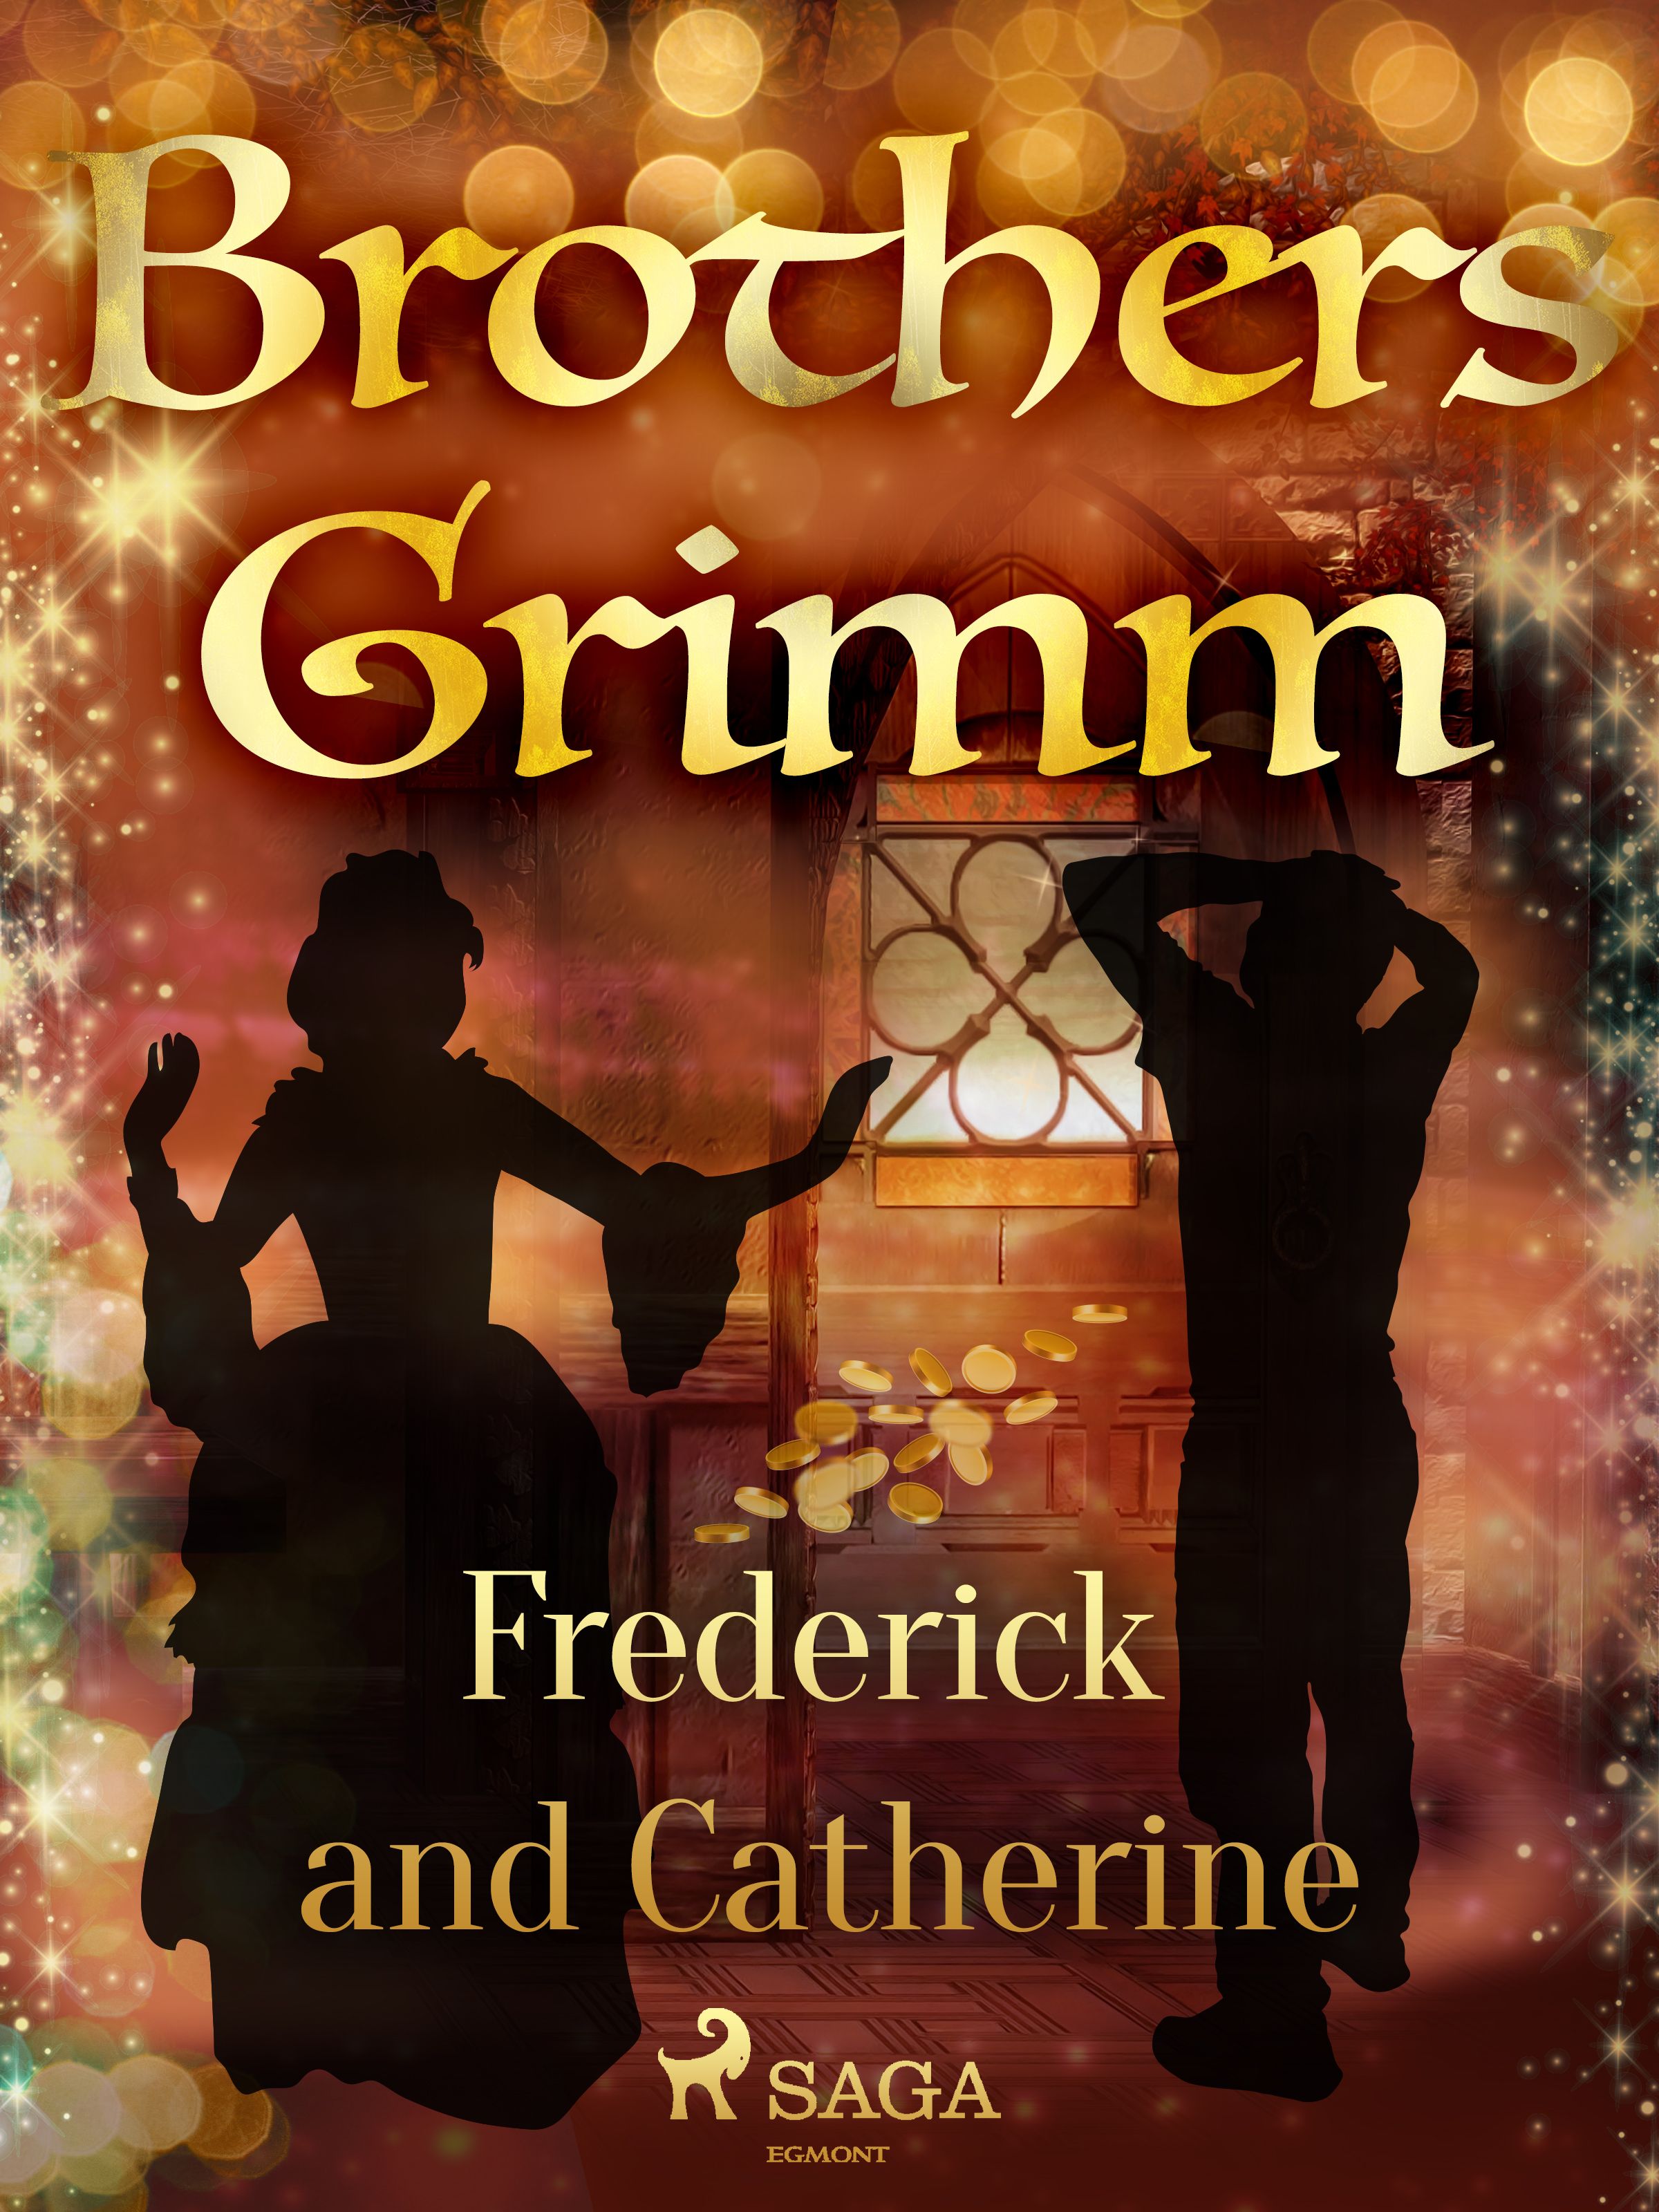 Frederick and Catherine, e-bog af Brothers Grimm